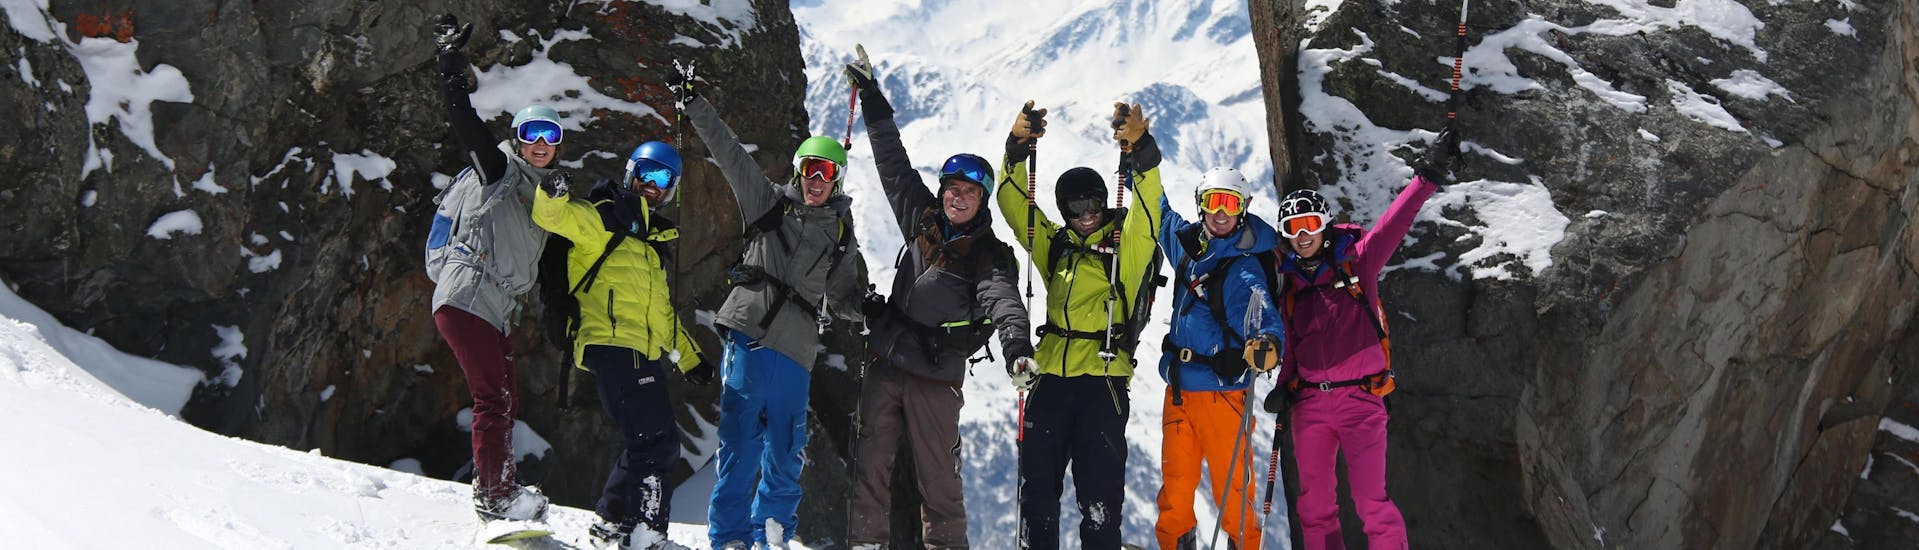 Een groep vrienden neemt een paar foto's tijdens de skilessen voor volwassenen - alle niveaus, georganiseerd door de skischool Prosneige Val d'Isère.